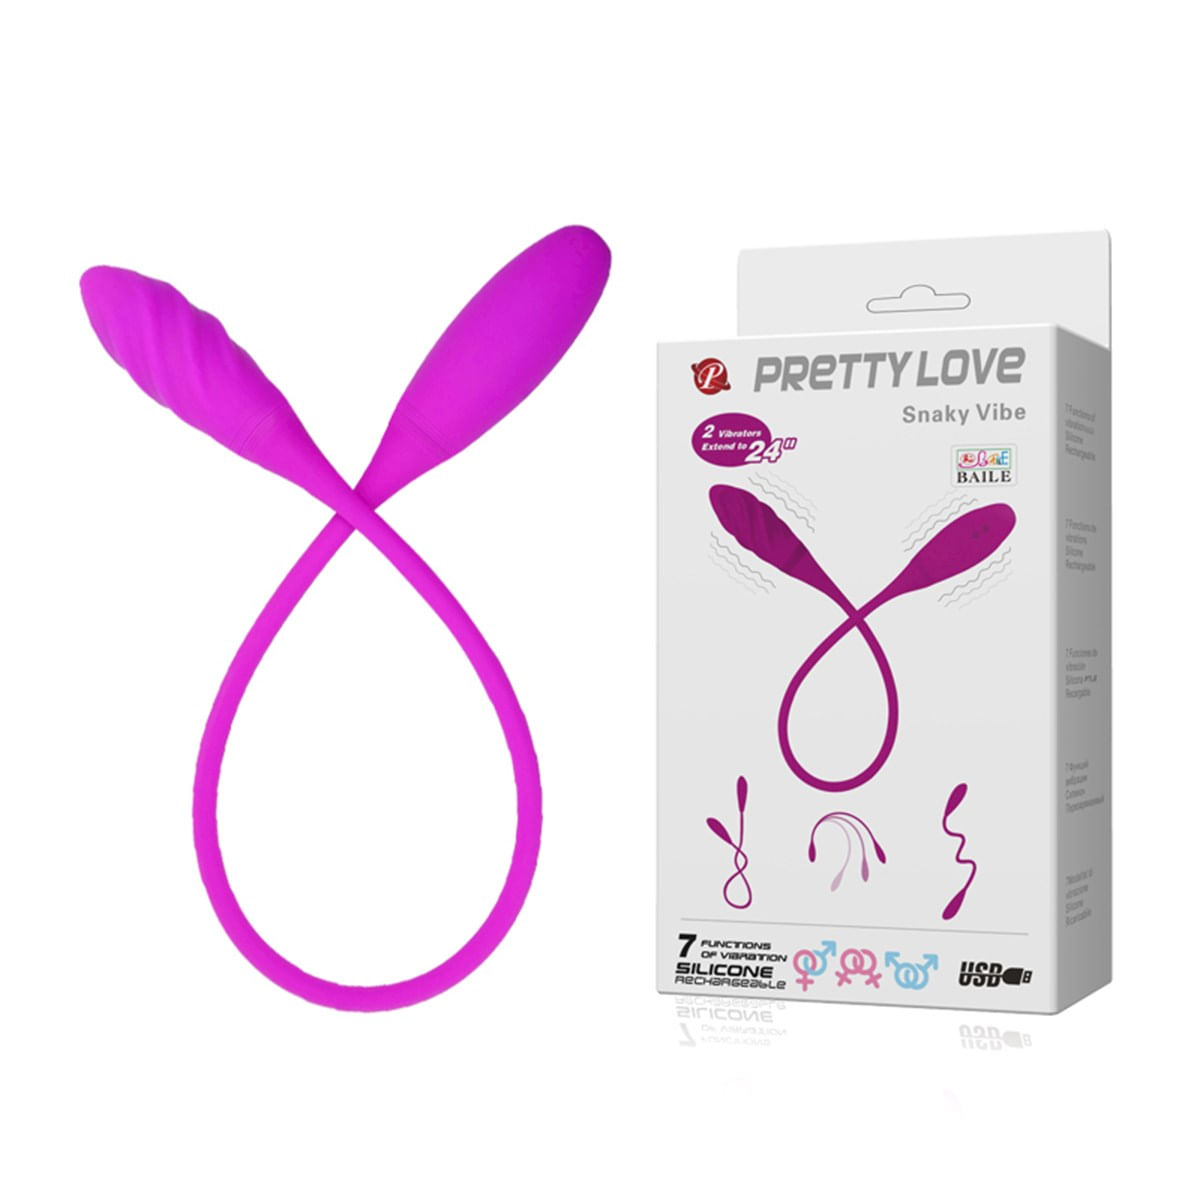 Vibrador Duplo Flexível com 7 Modos de Vibração Pretty Love Snaku Vibe Miss Collection